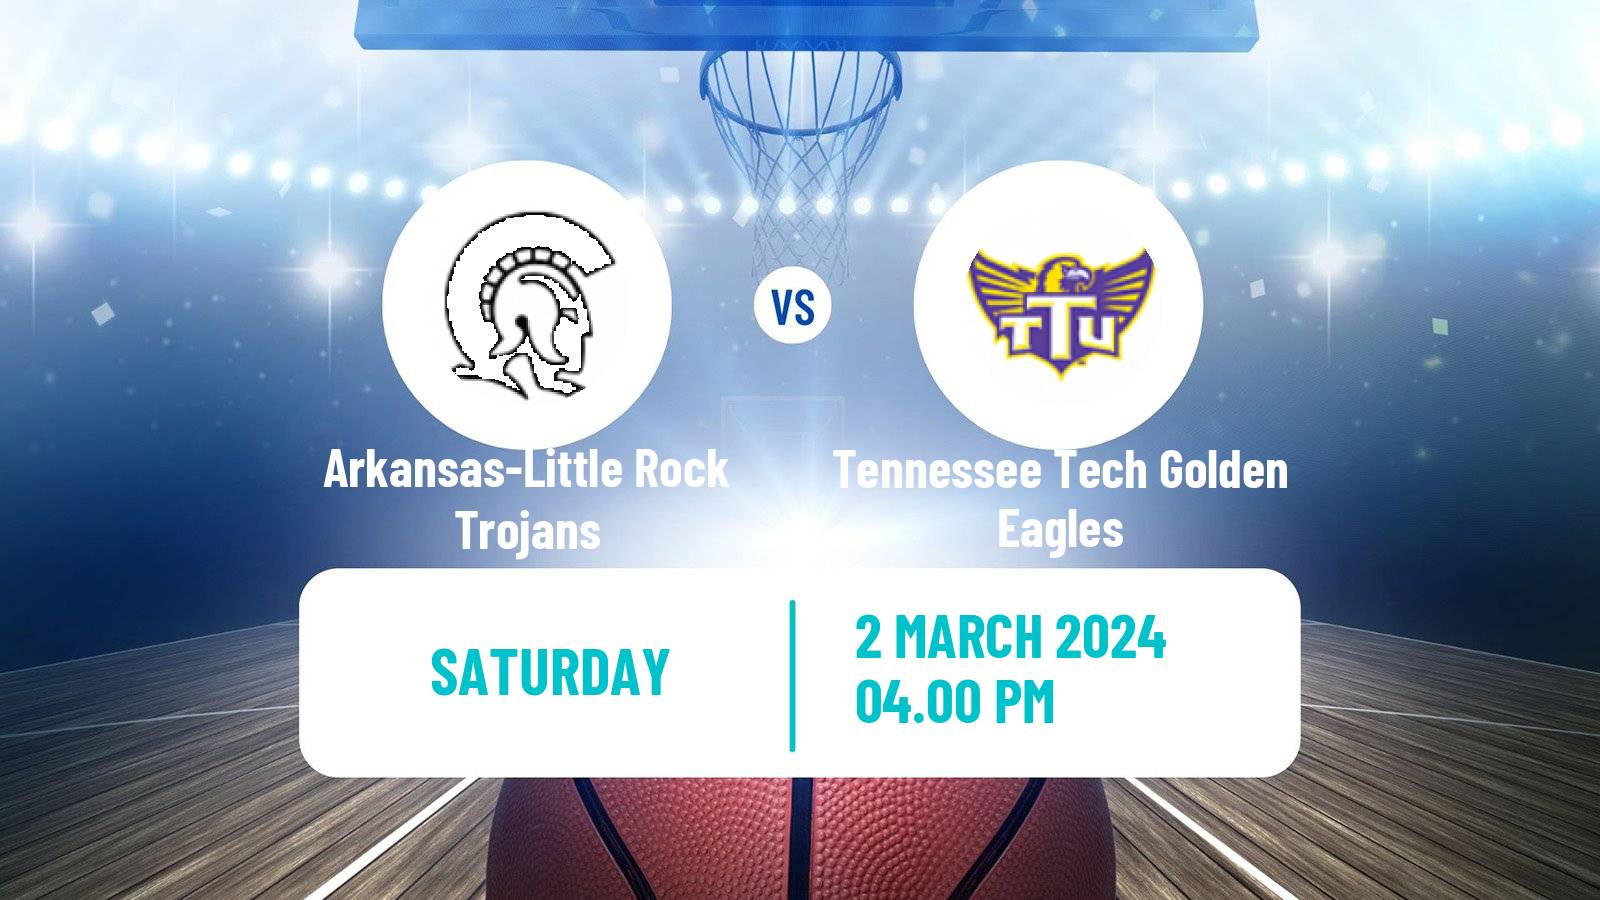 Basketball NCAA College Basketball Arkansas-Little Rock Trojans - Tennessee Tech Golden Eagles